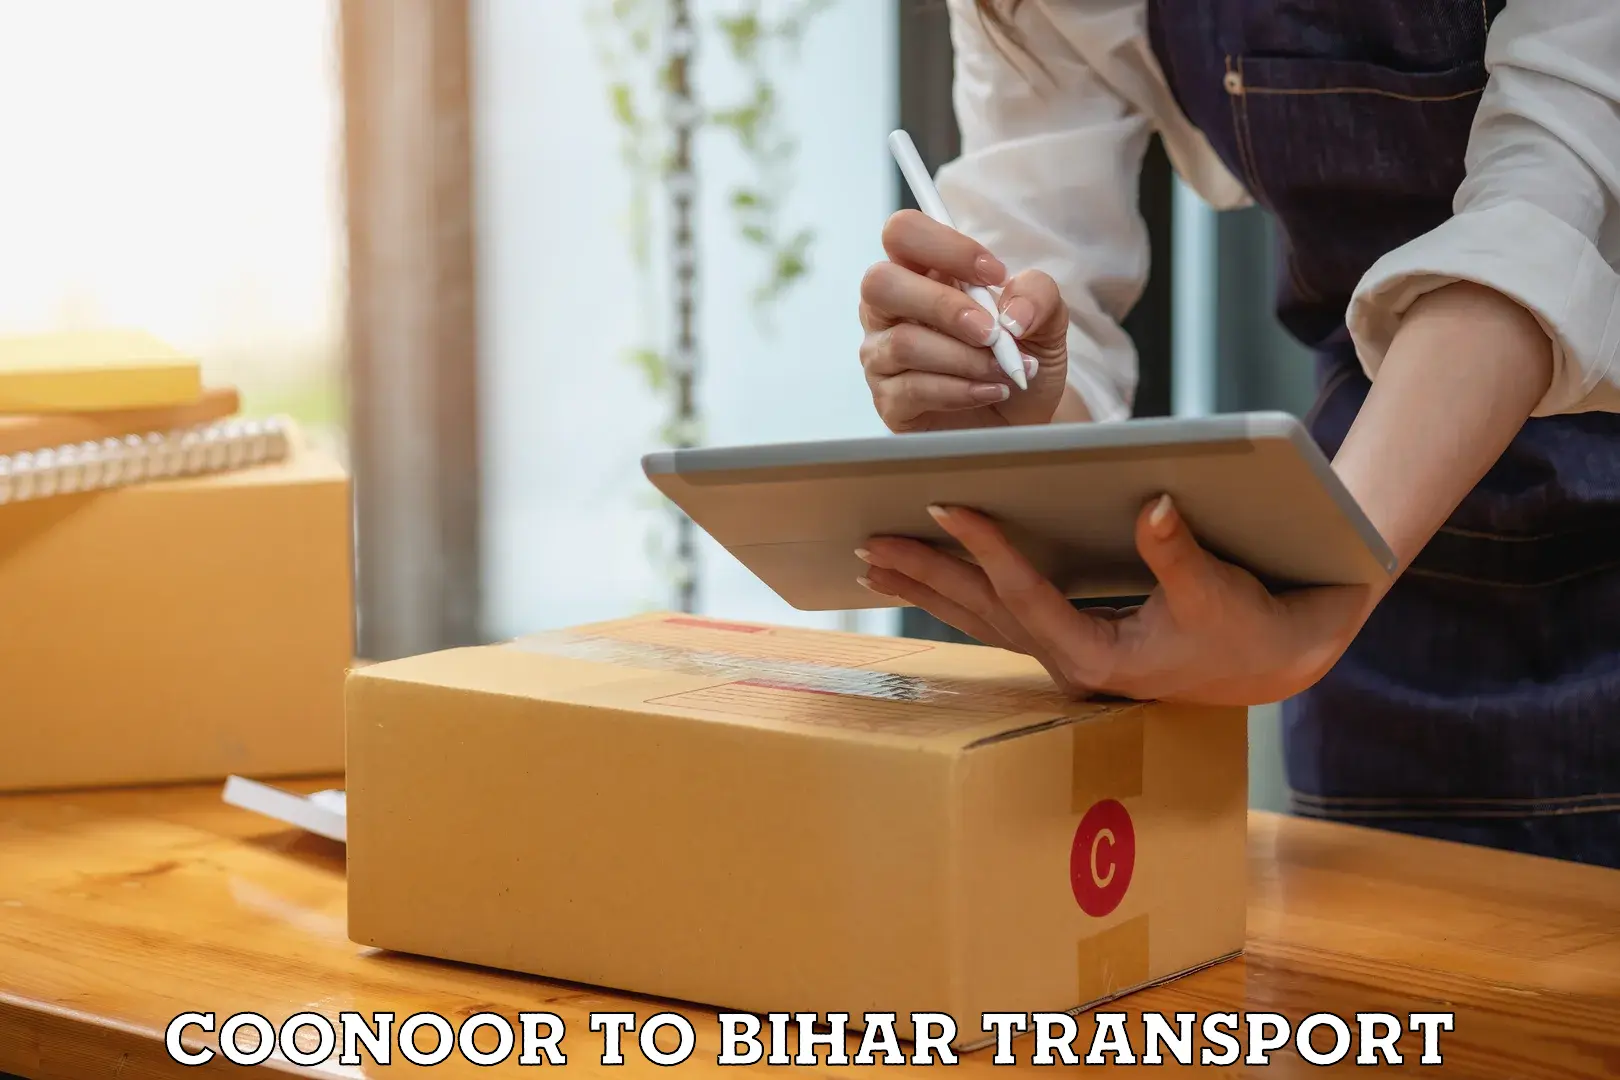 Online transport service Coonoor to Sandesh